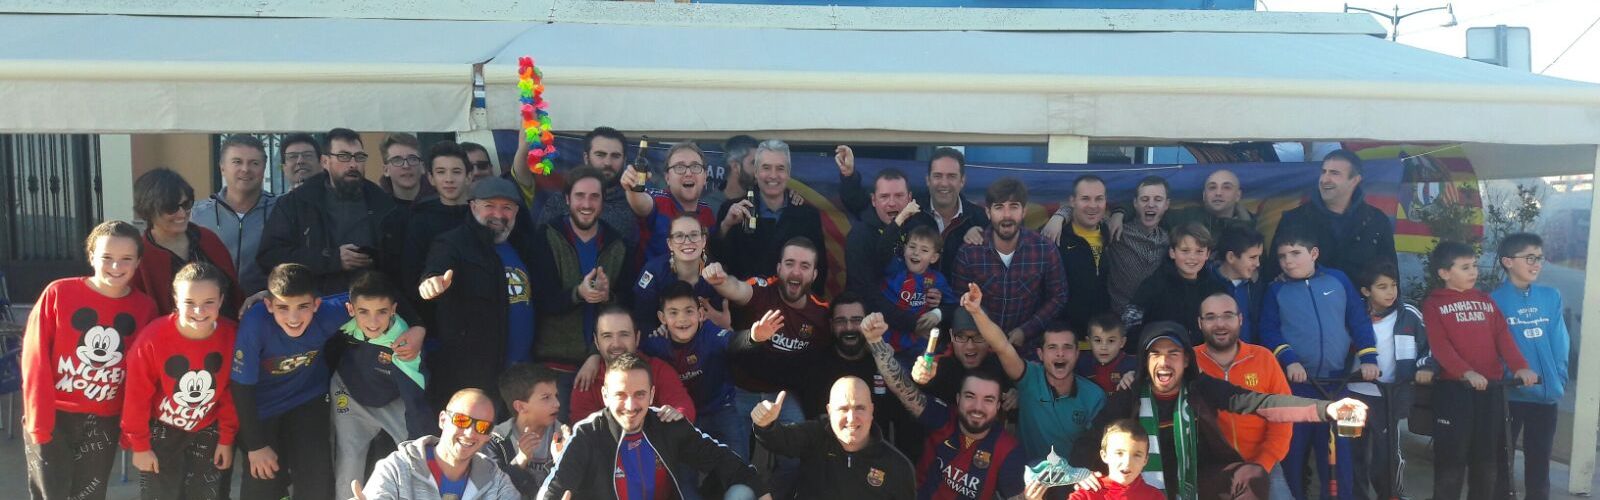 La Penya Addictes Barça celebra la victòria al Bernabeu